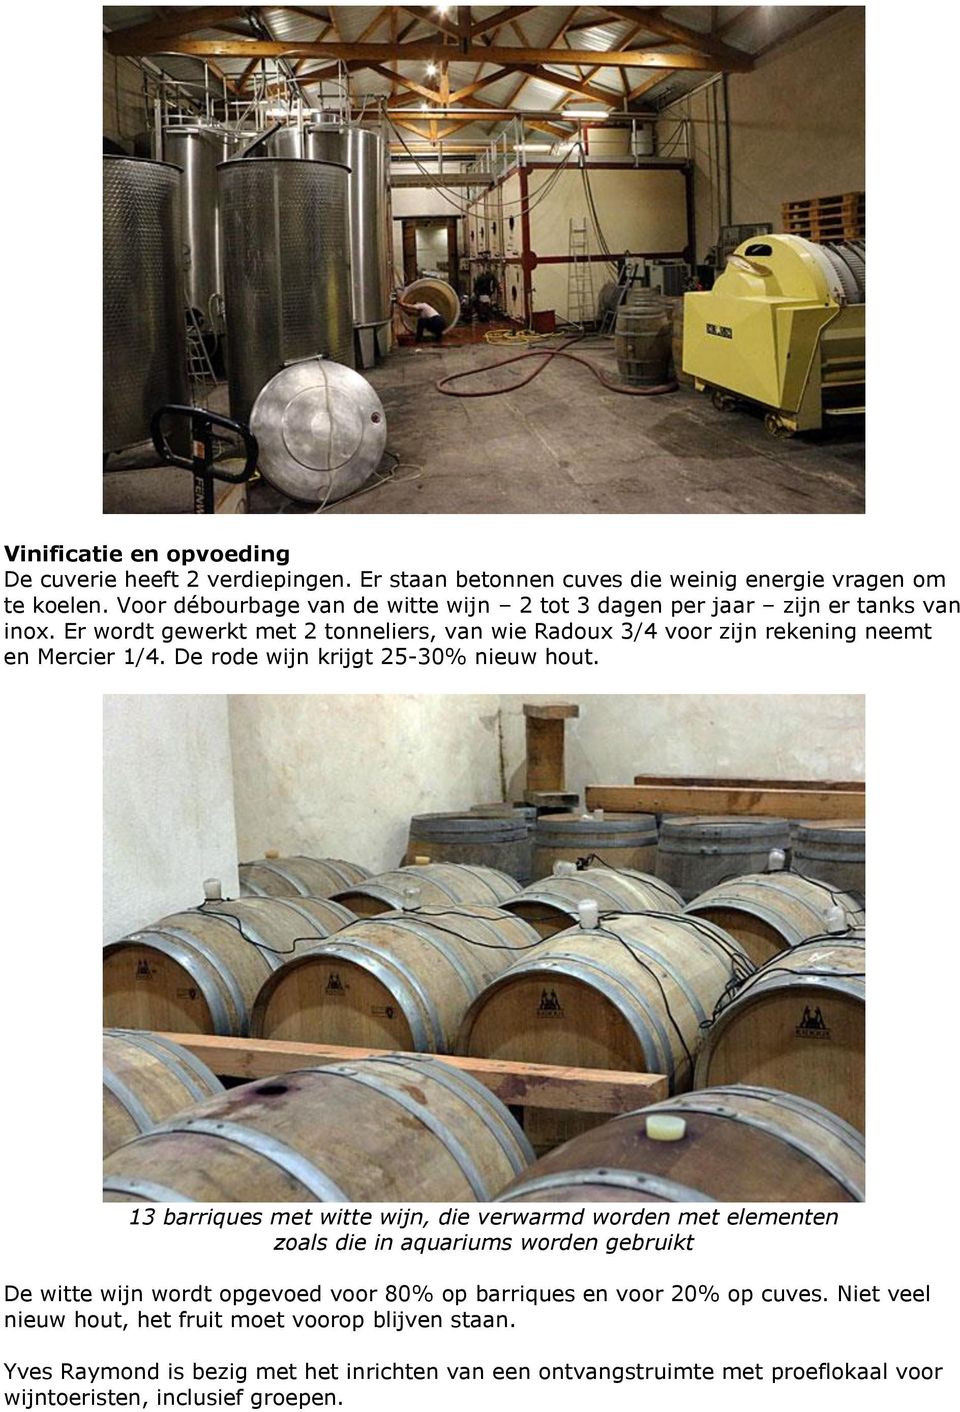 Er wordt gewerkt met 2 tonneliers, van wie Radoux 3/4 voor zijn rekening neemt en Mercier 1/4. De rode wijn krijgt 25-30% nieuw hout.